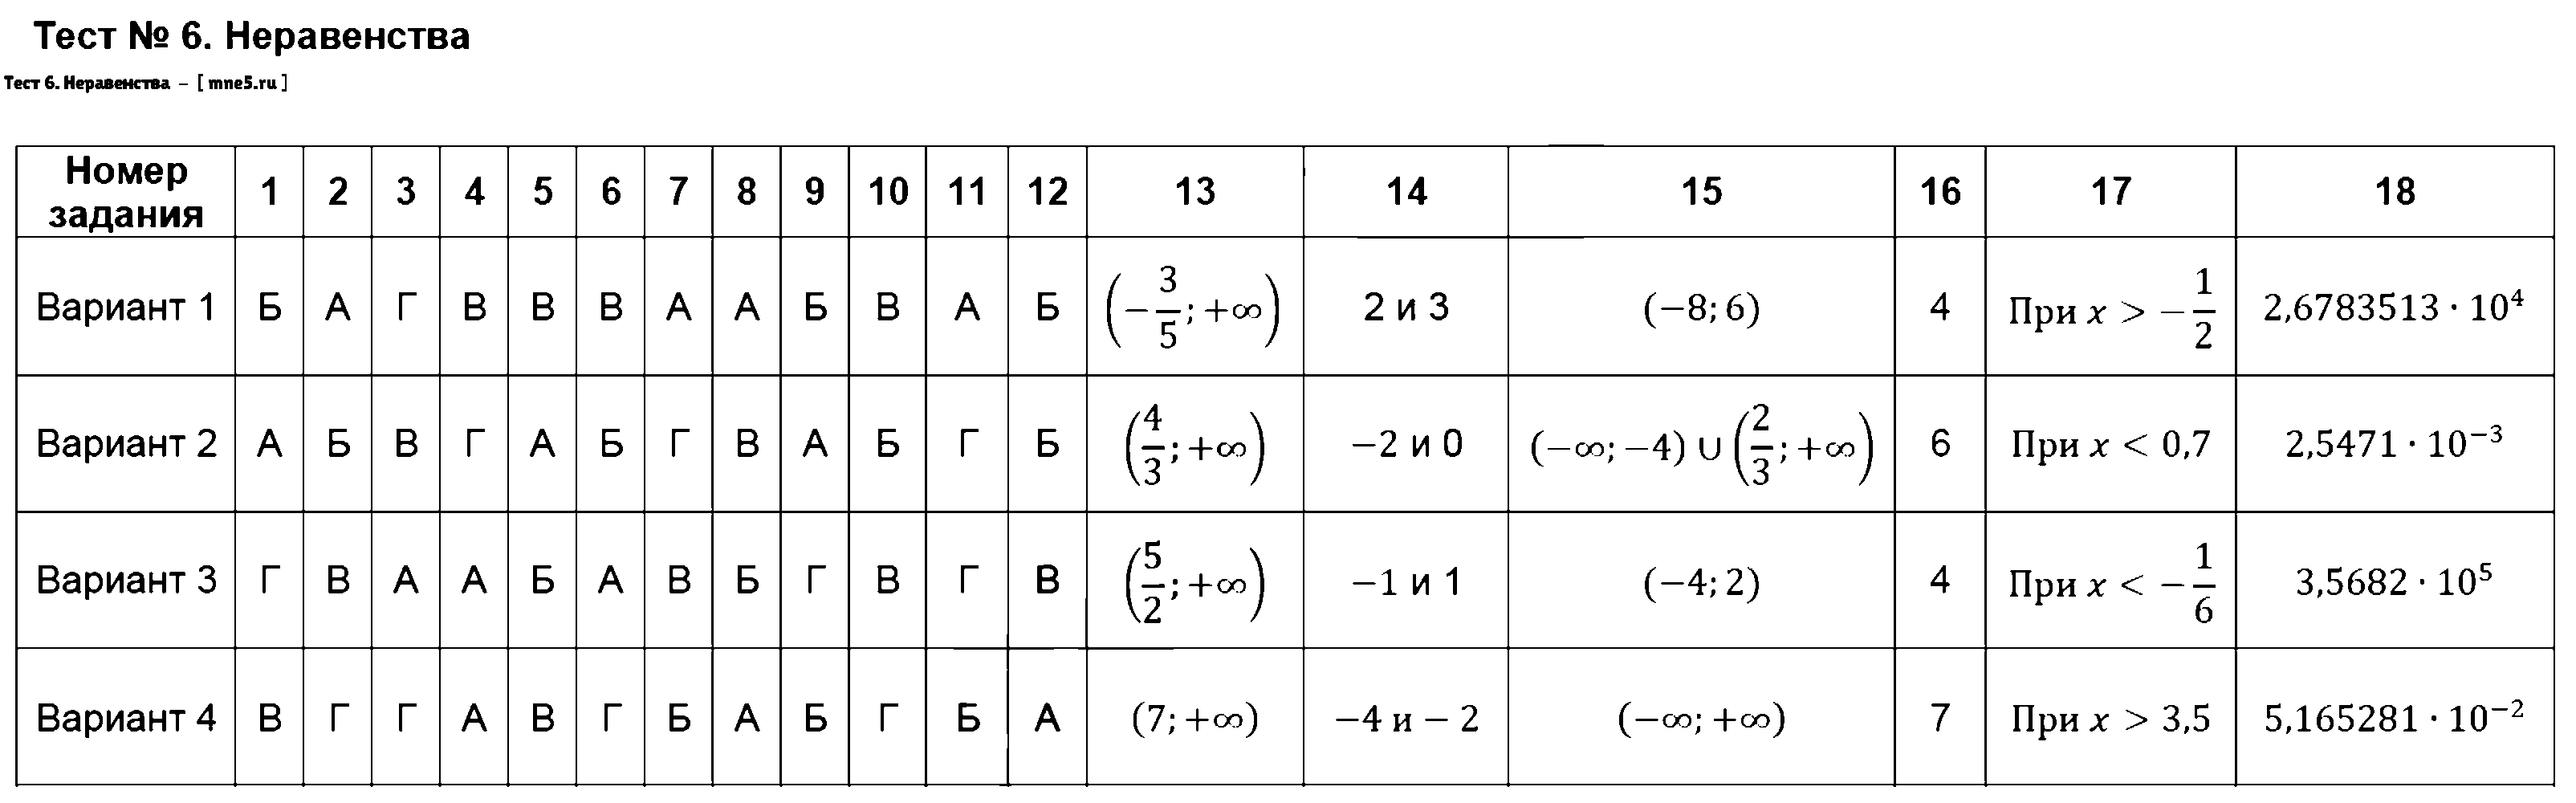 ГДЗ Алгебра 8 класс - Тест 6. Неравенства